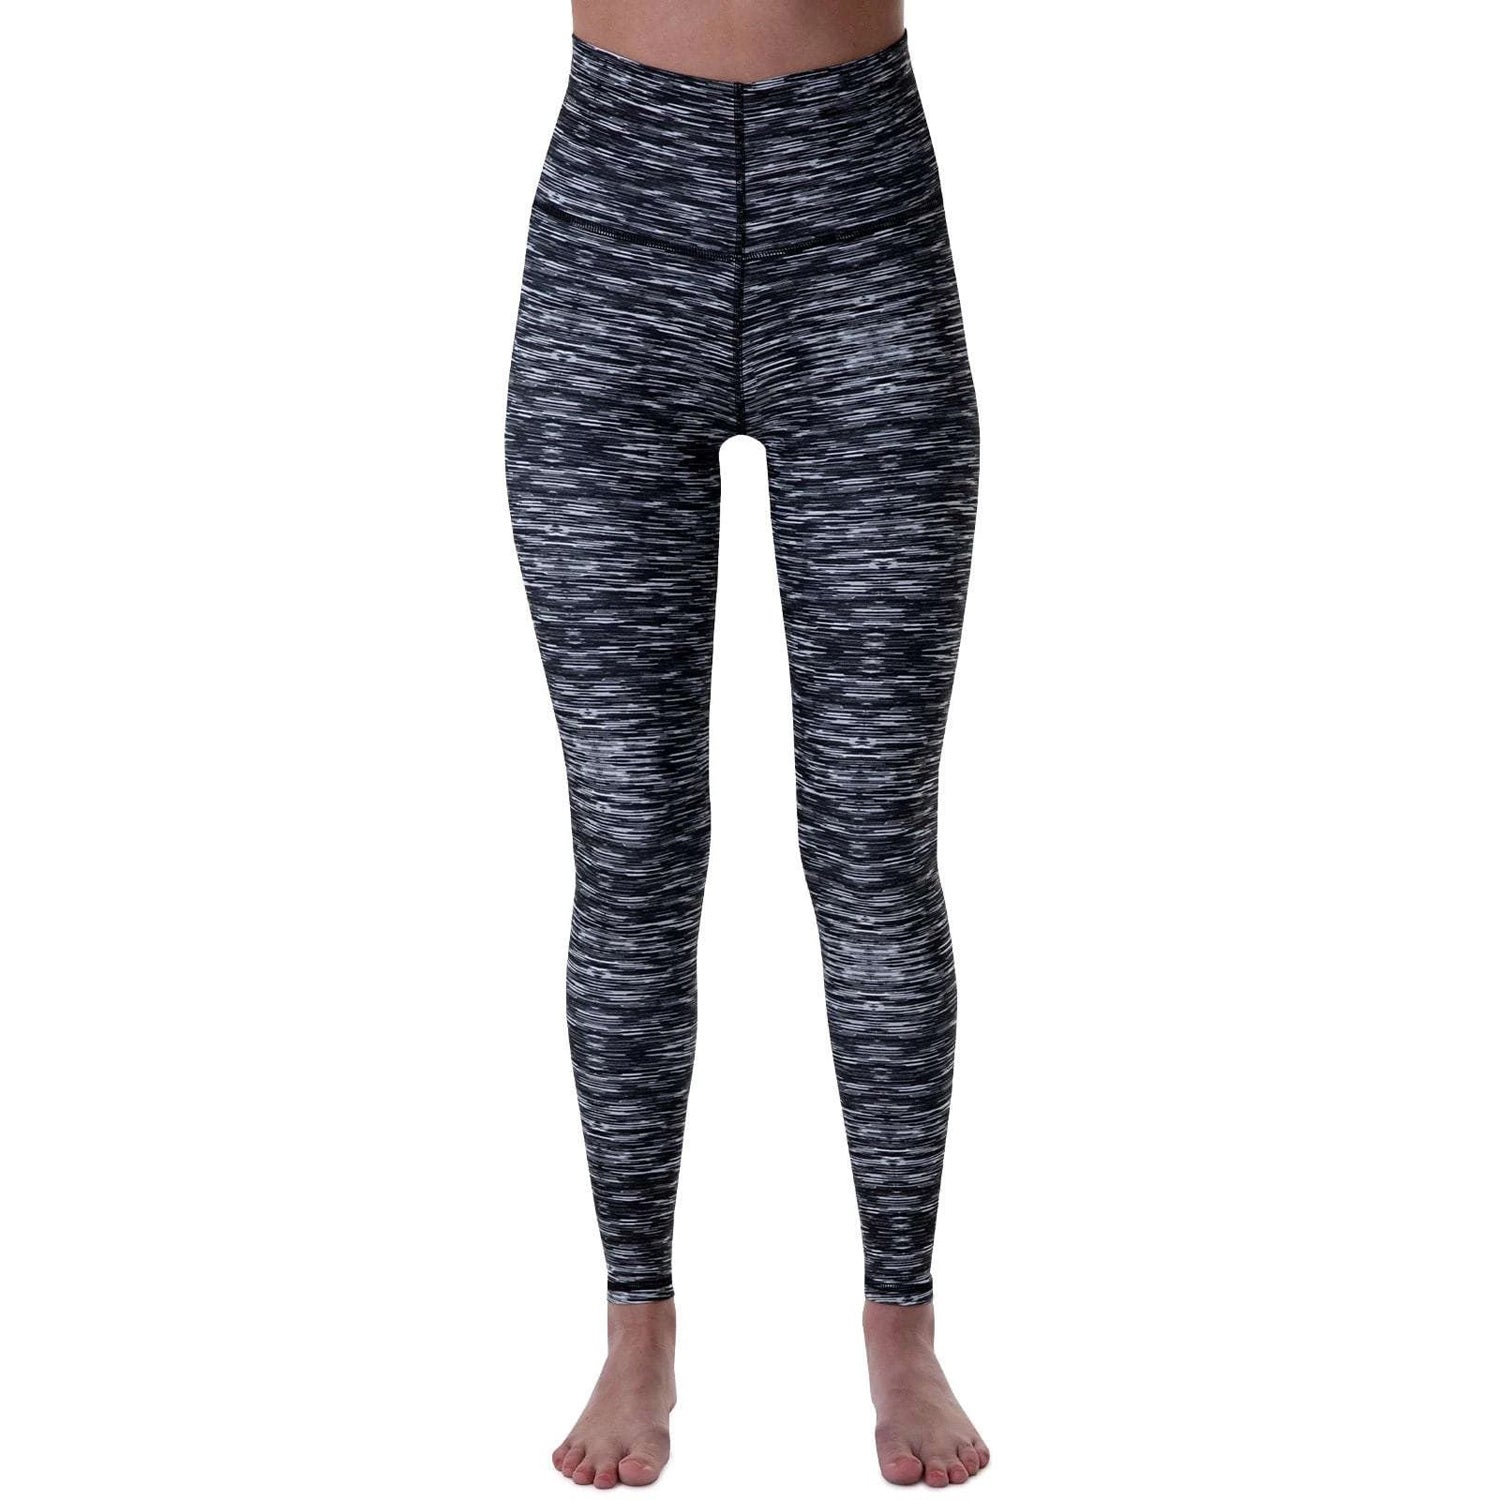 Blackstrap Women's Pinnacle Baselayer Pant Static Base Layer Pants